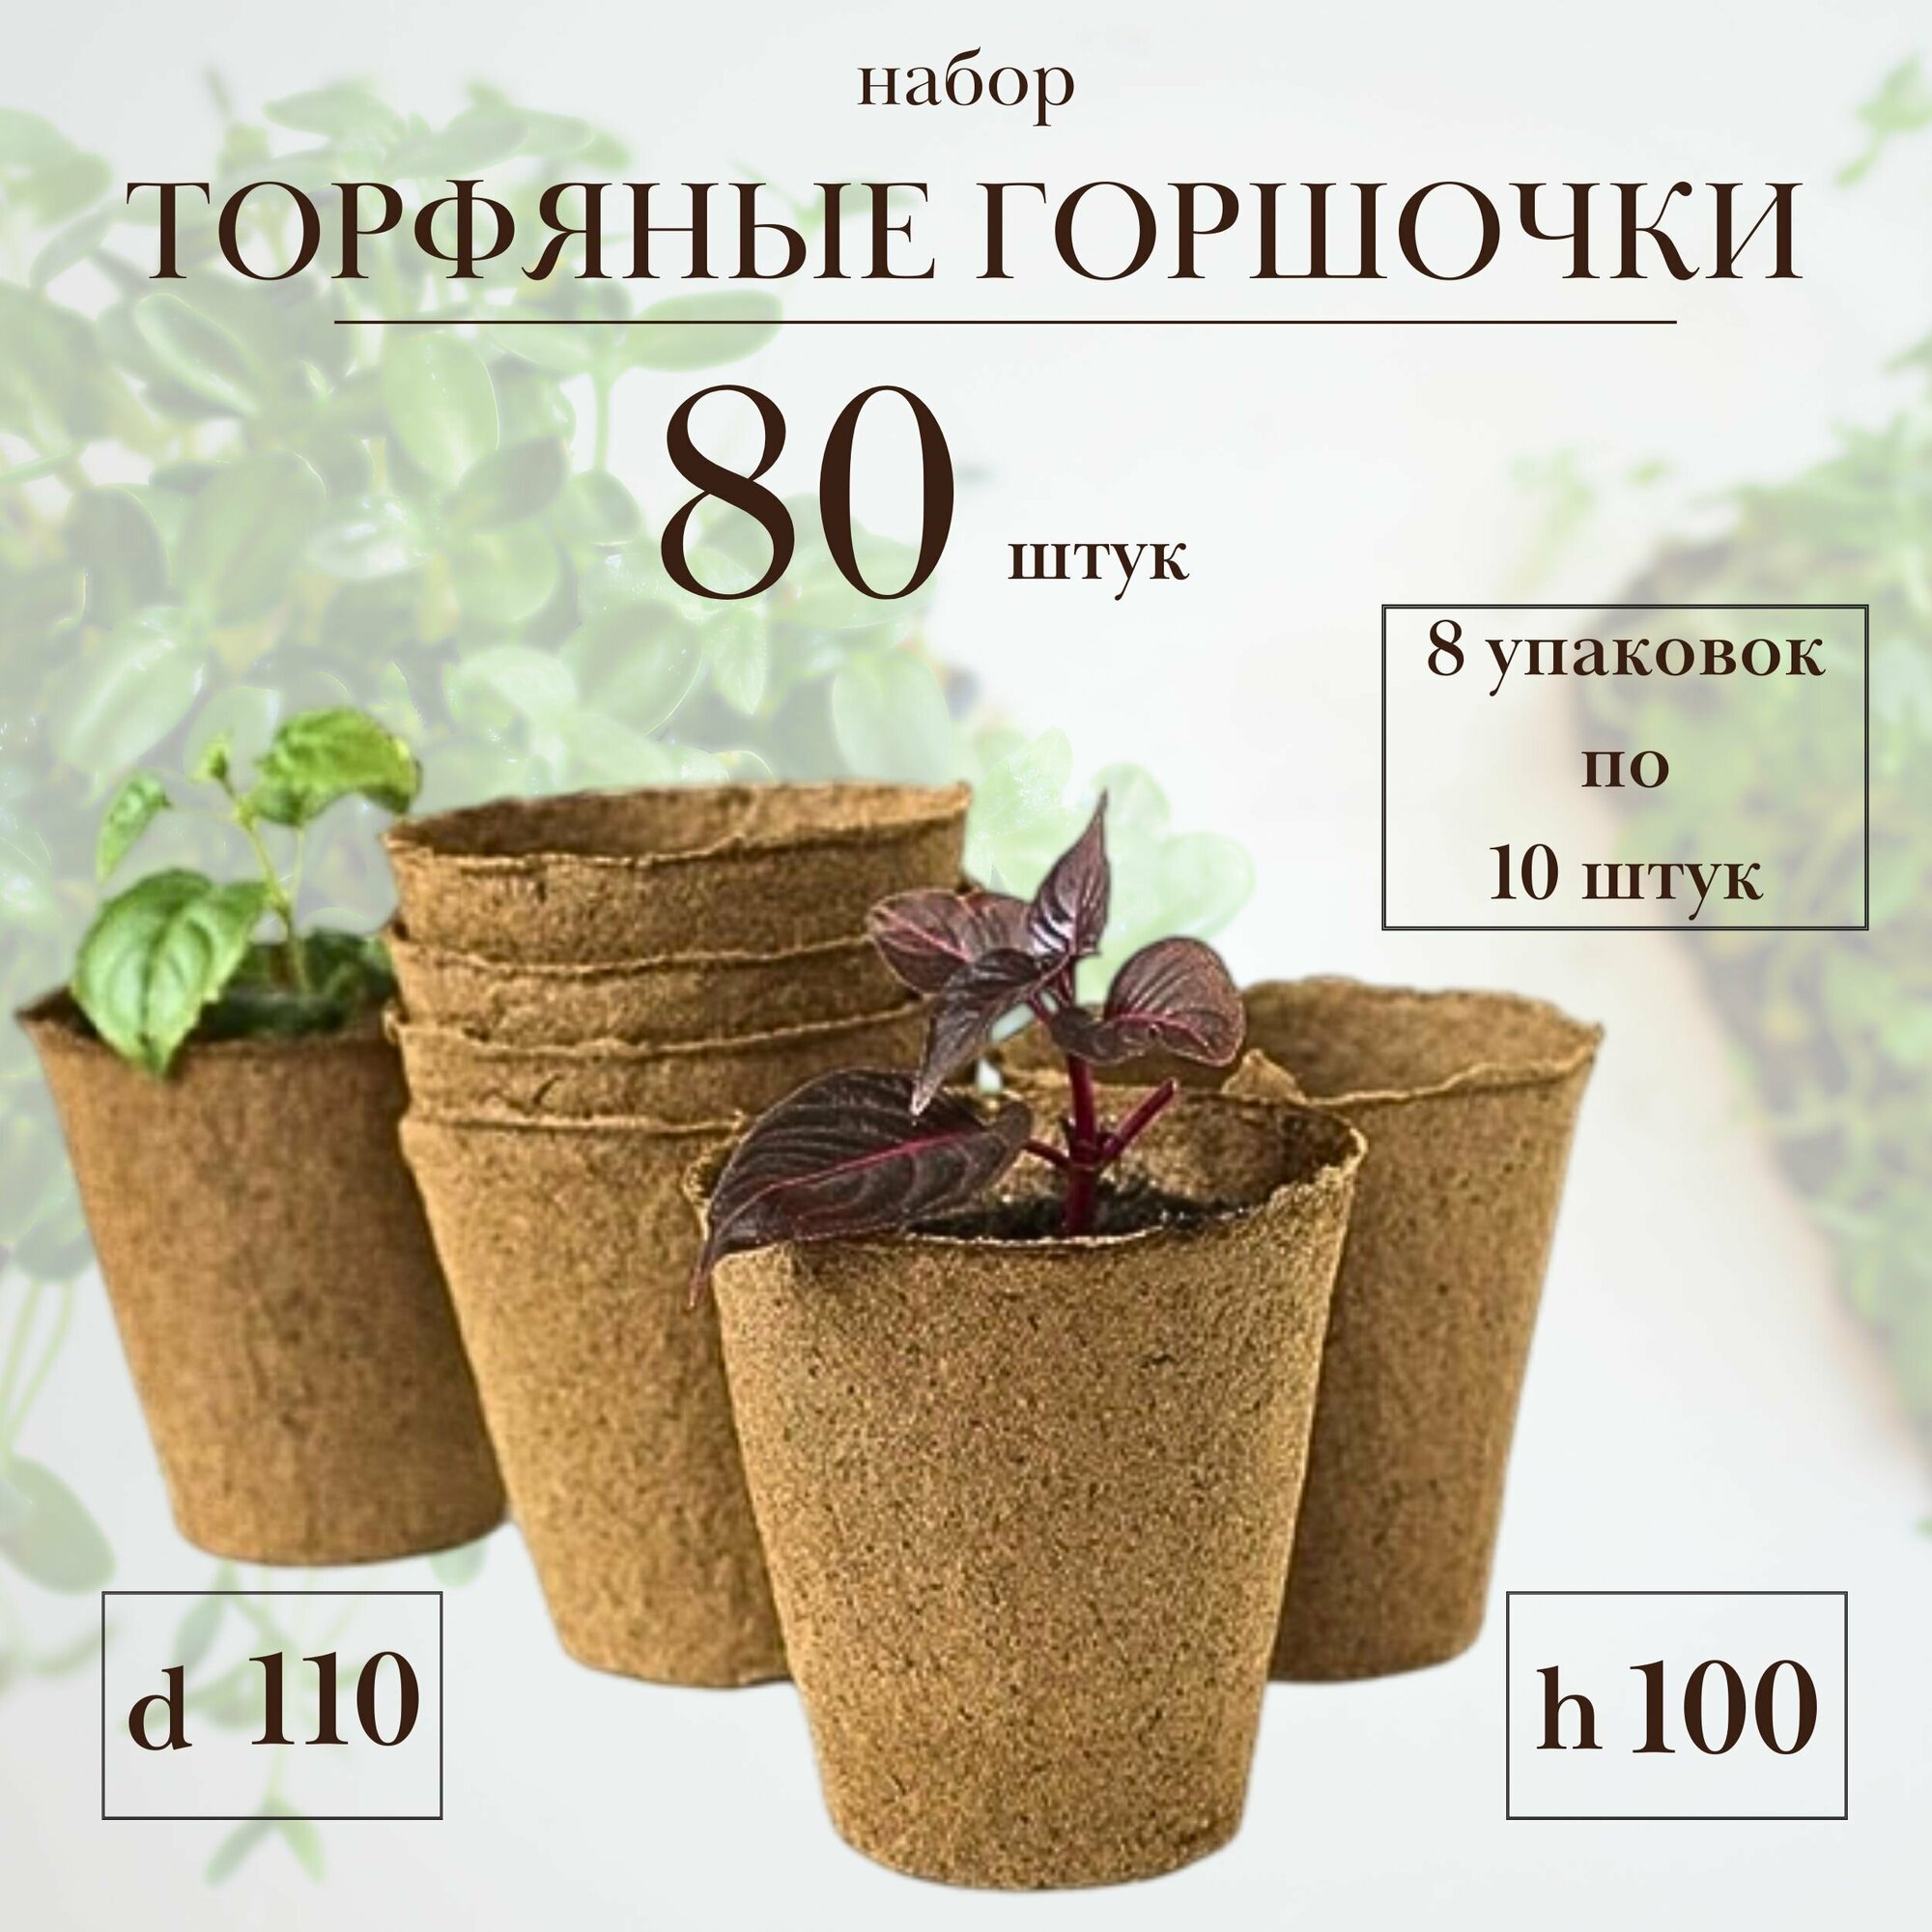 Торфяные горшочки для рассады, d 110 h 100 мм, набор 8 уп по 10 шт (итого 80 стаканчиков) для рассады любых овощей, цветов и растений